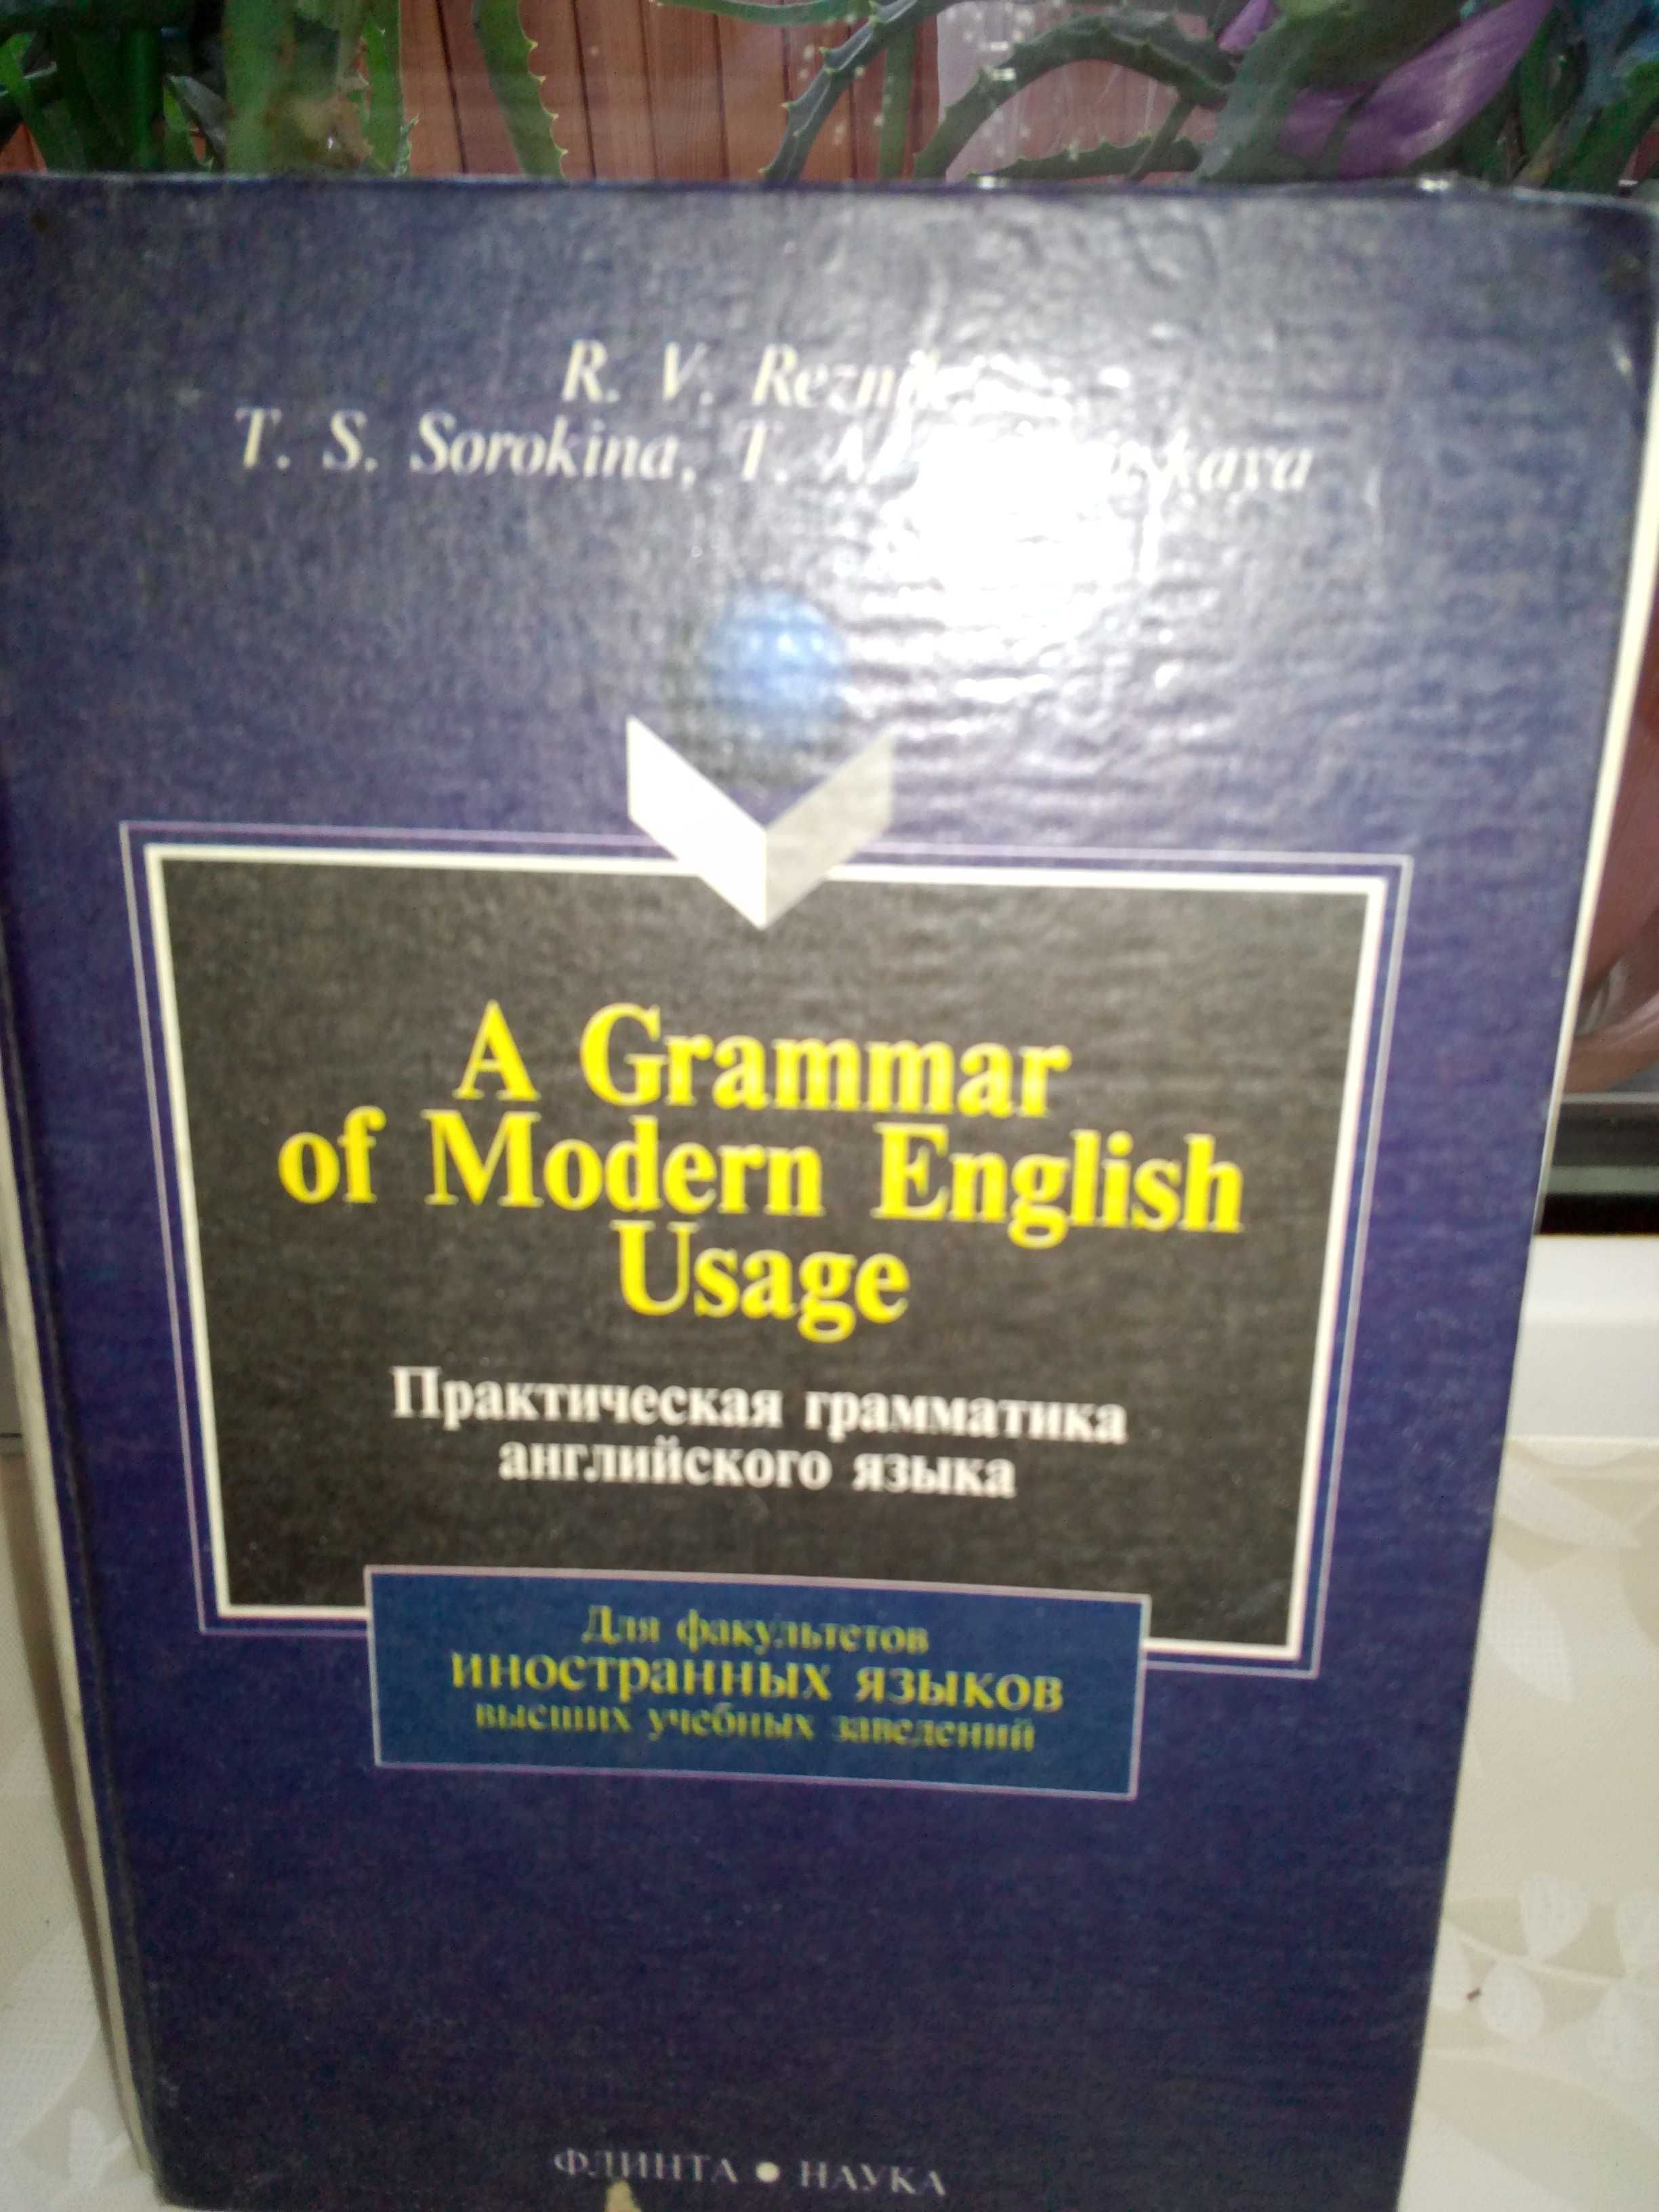 Учебник "Практическая грамматика английского языка"